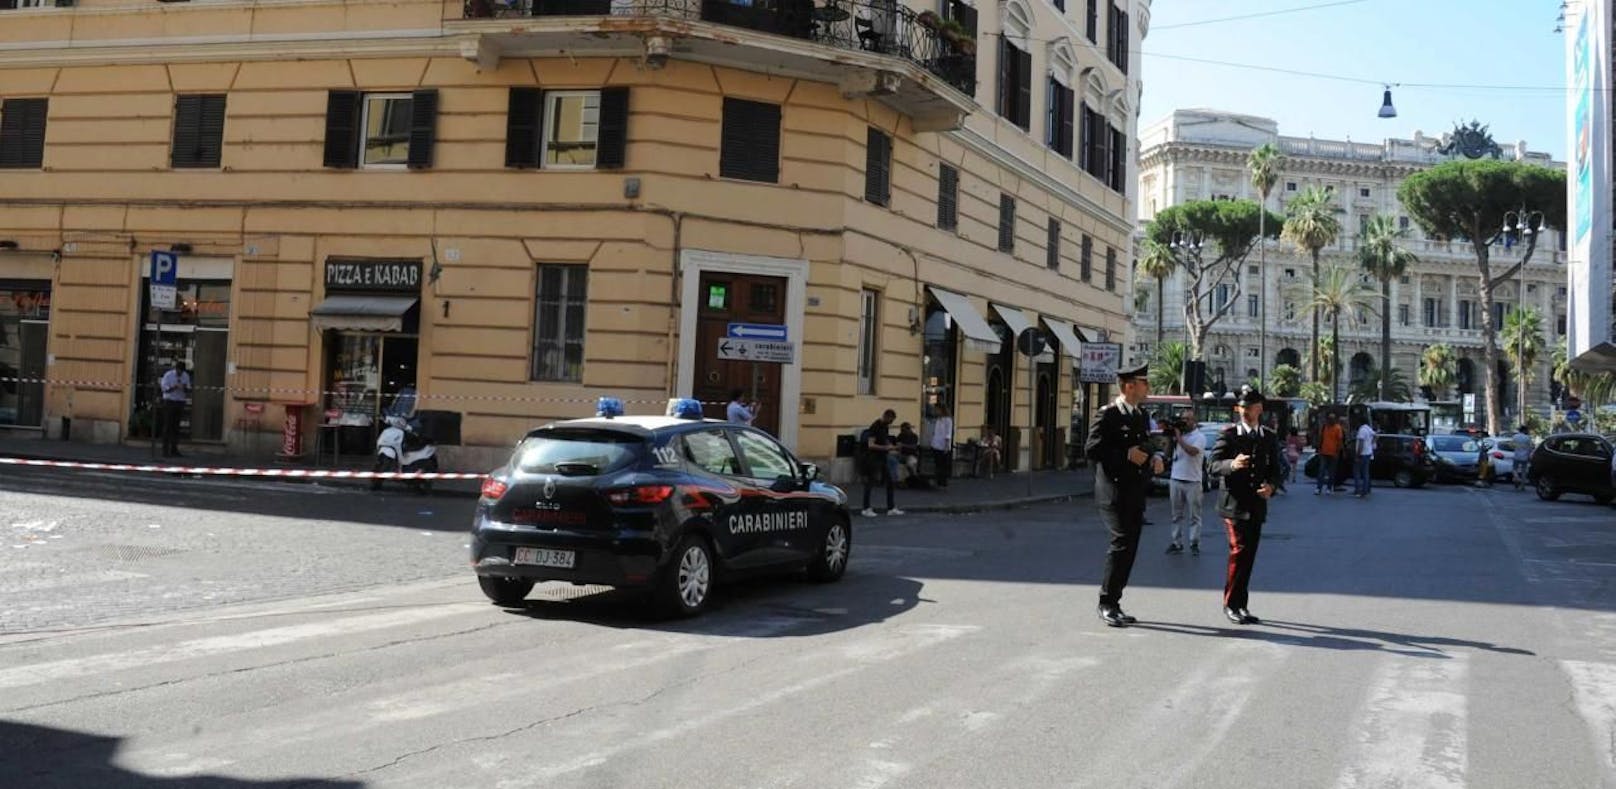 Ein Polizist wurde in Rom umgebracht. Mit acht Messerstichen in der Brustgegend soll ein Verdächtiger den 35-jährigen Carabiniere Mario Cerciello Rega im römischen Nobelviertel Prati unweit des Vatikans erstochen haben.